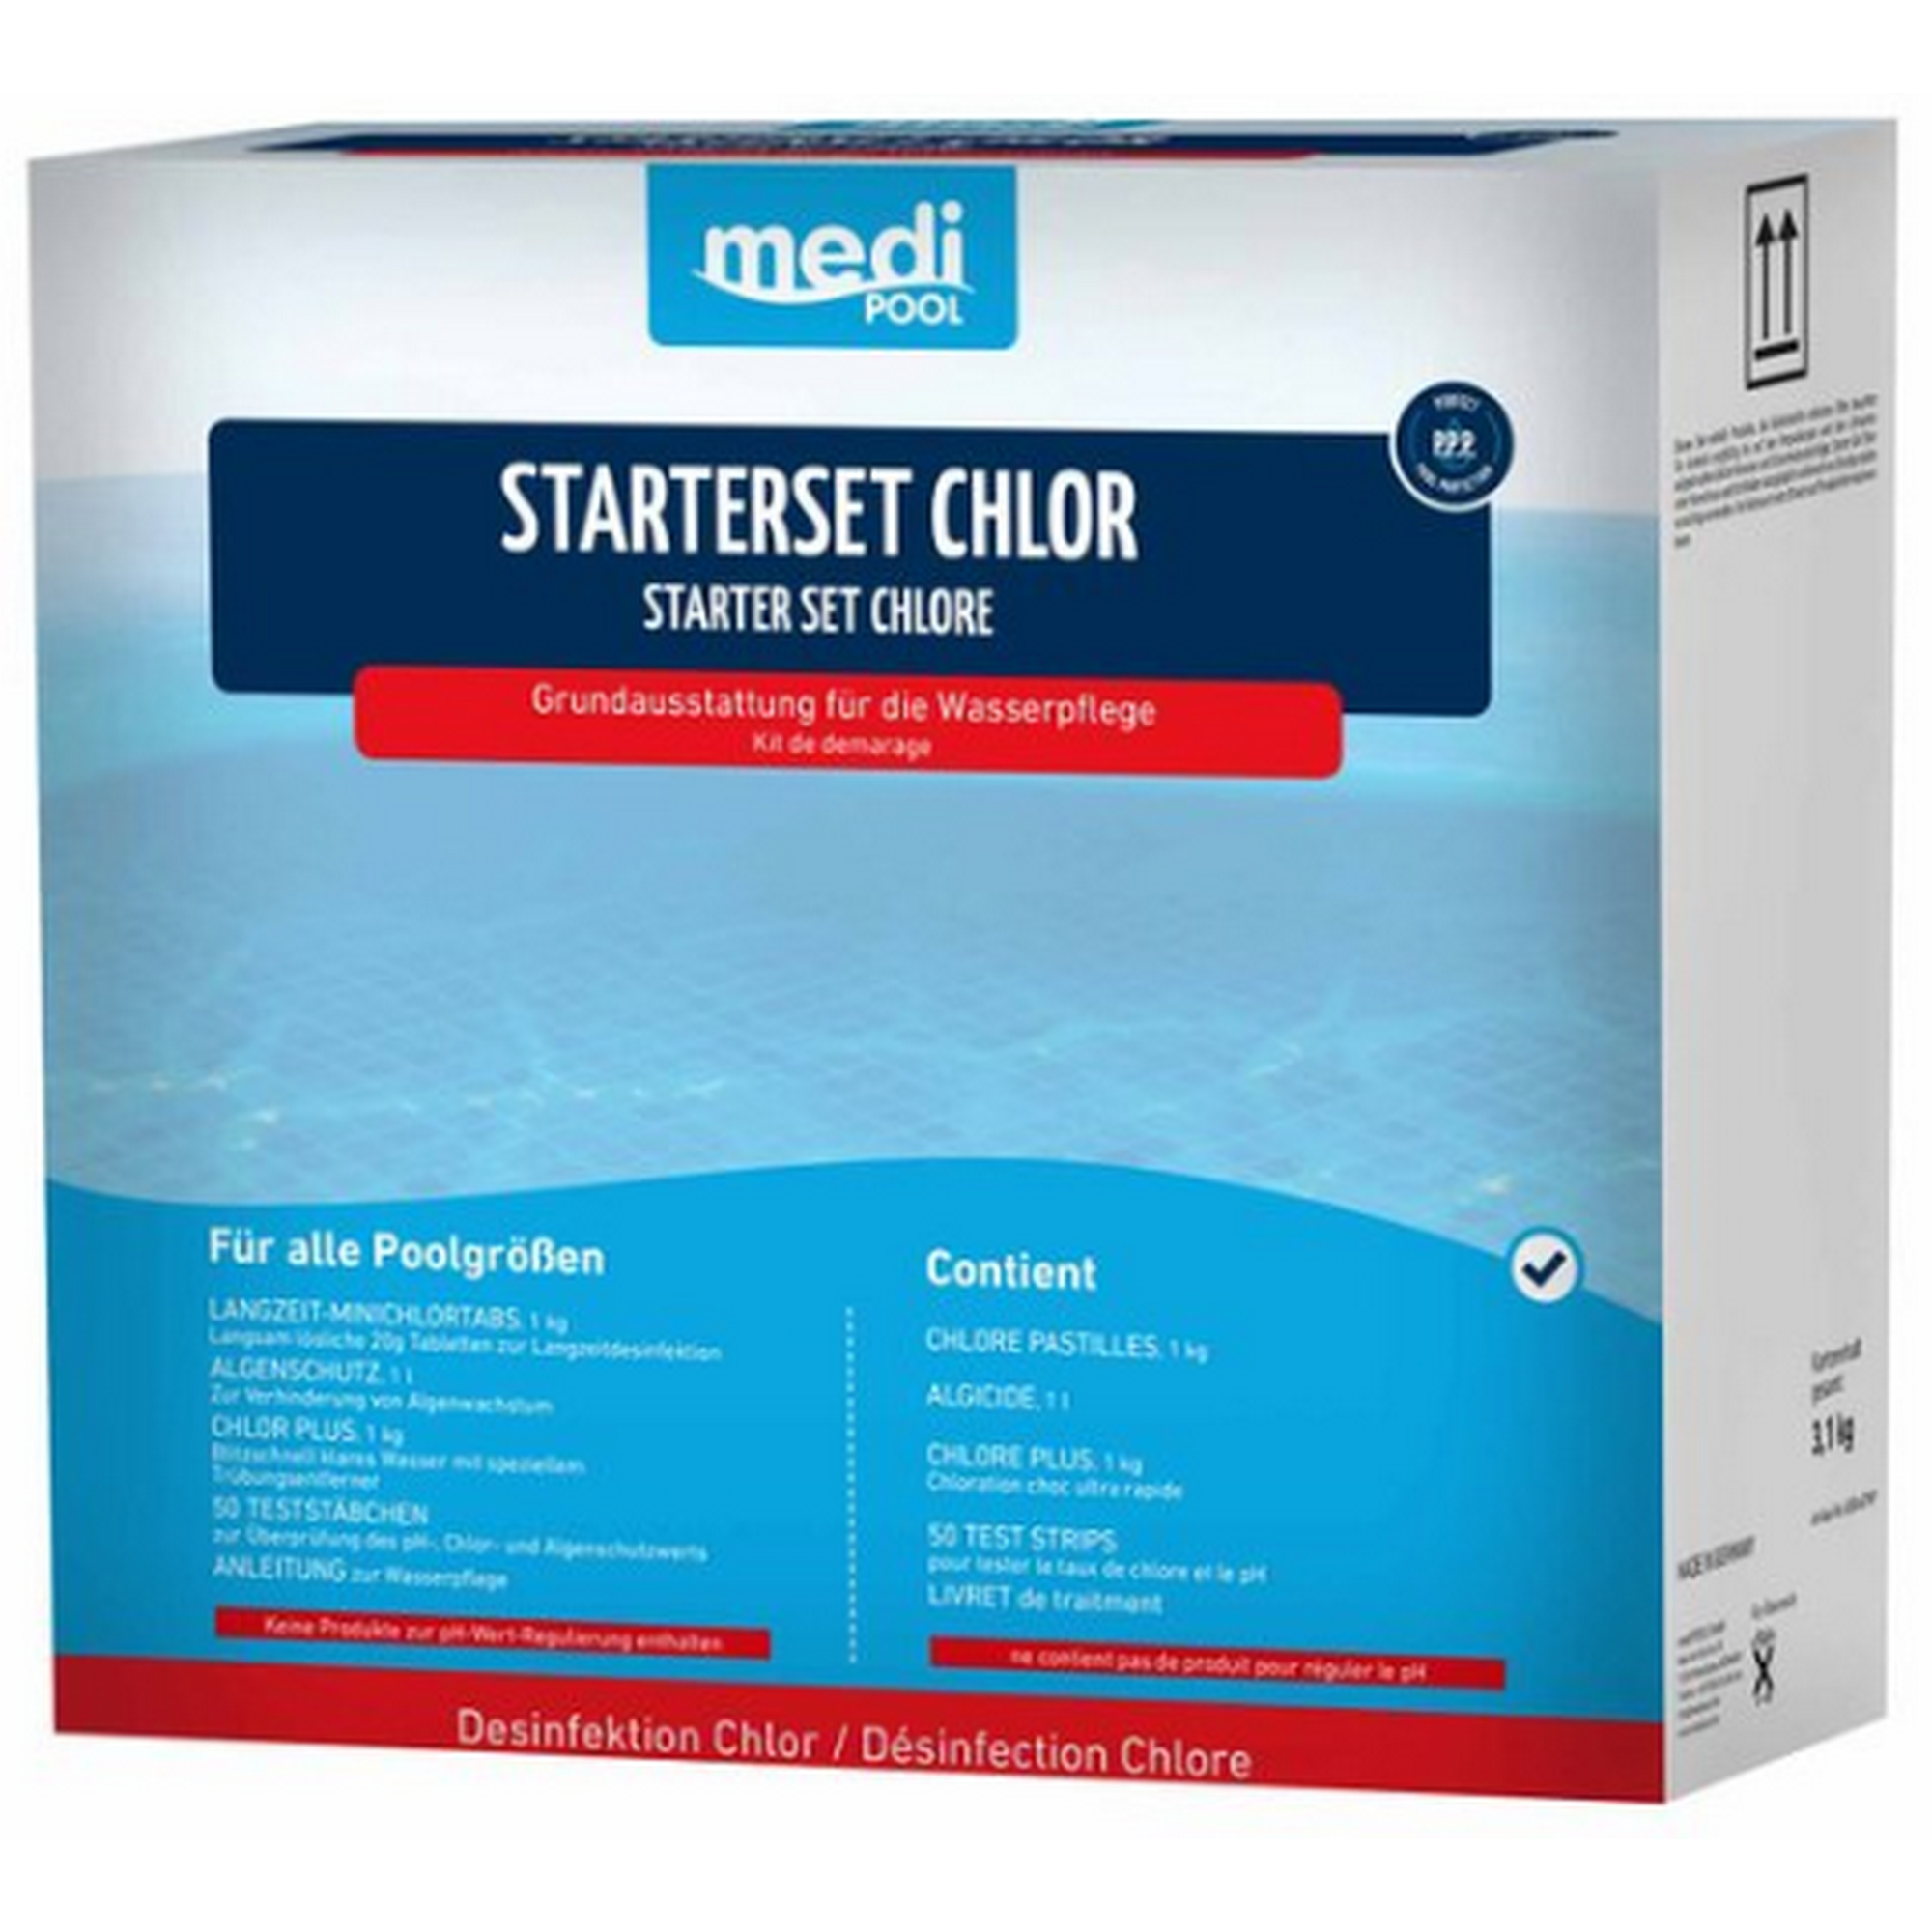 Starter-Set Chlor 3,1 kg, inklusive Algenschutz und Teststäbchen + product picture